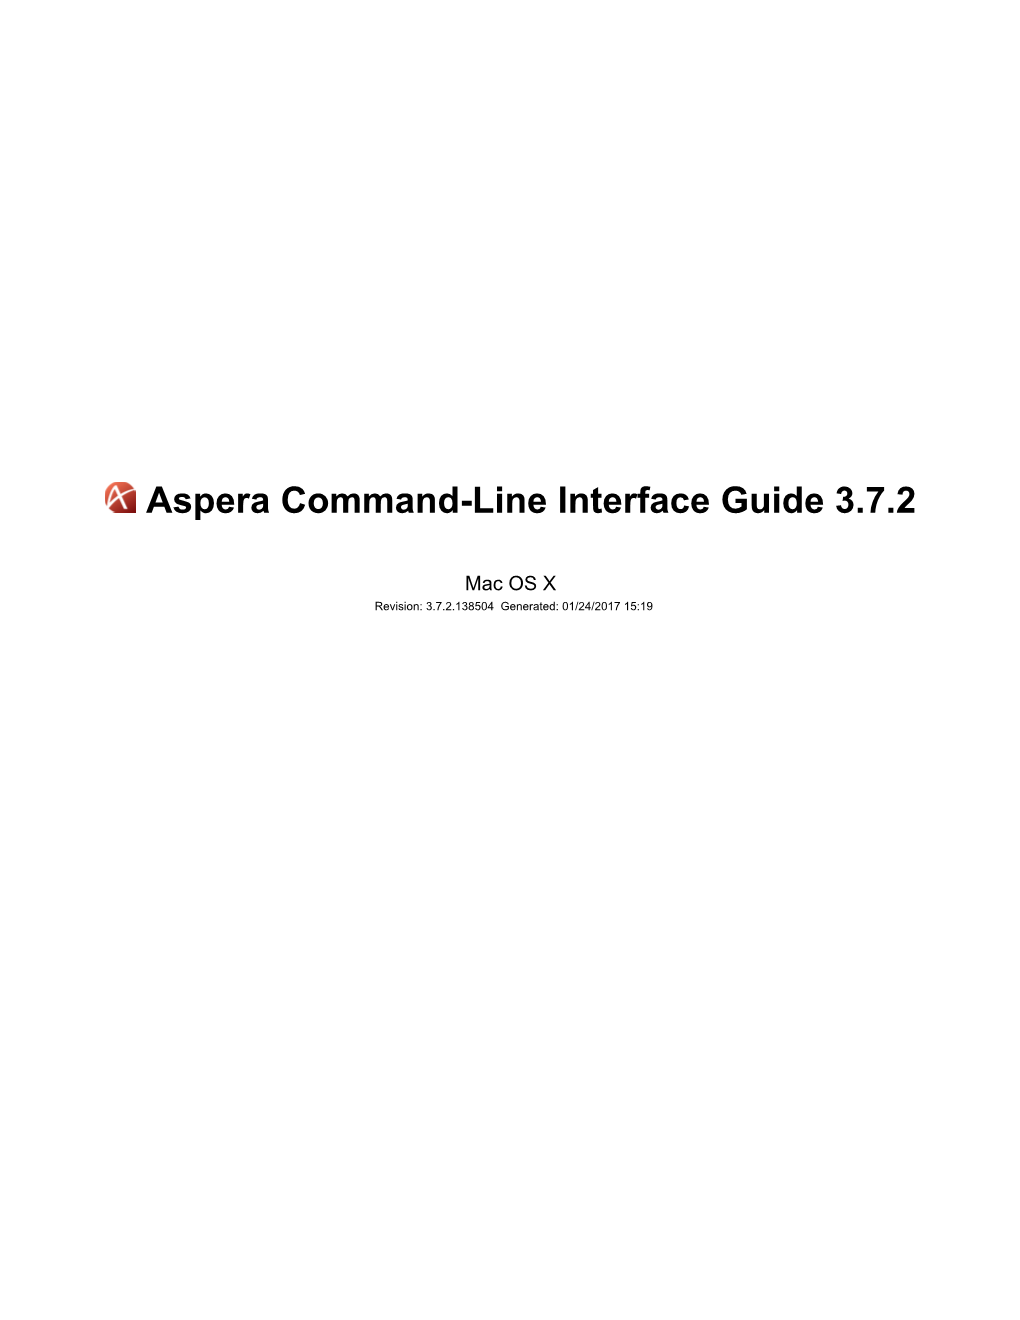 Aspera CLI User Guide